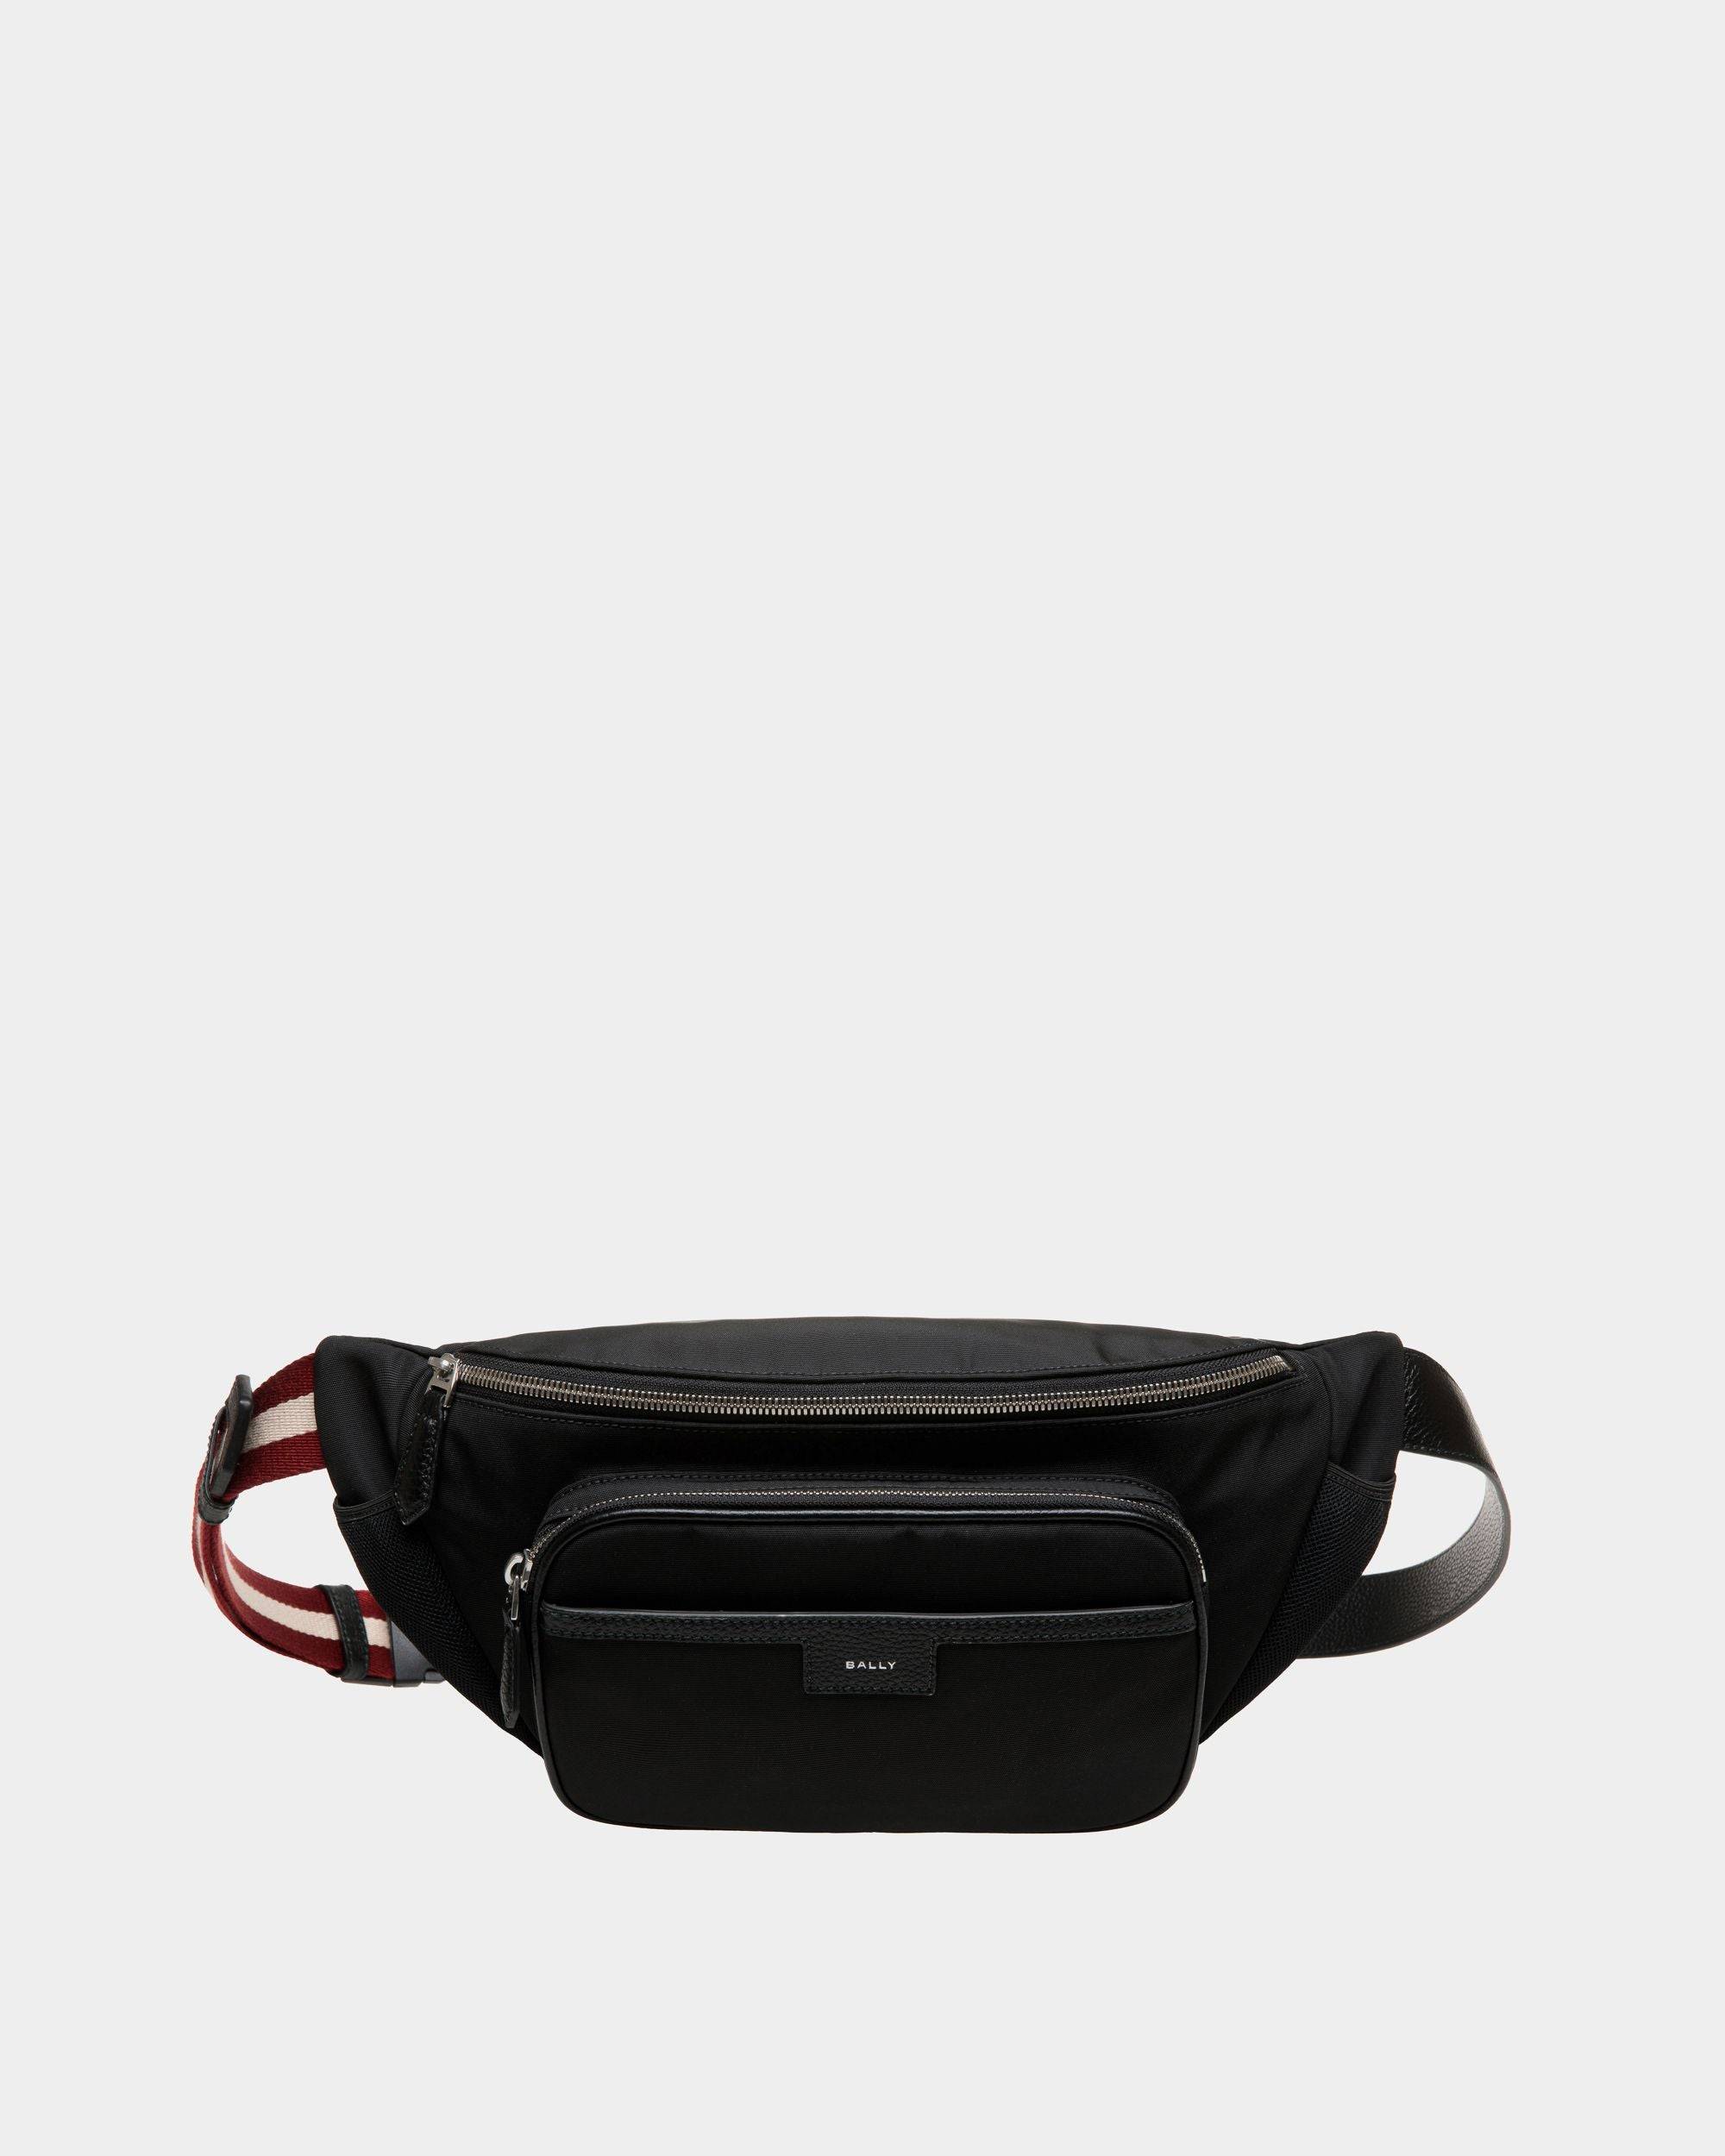 Men's Code Belt Bag in Black Nylon | Bally | Still Life Front